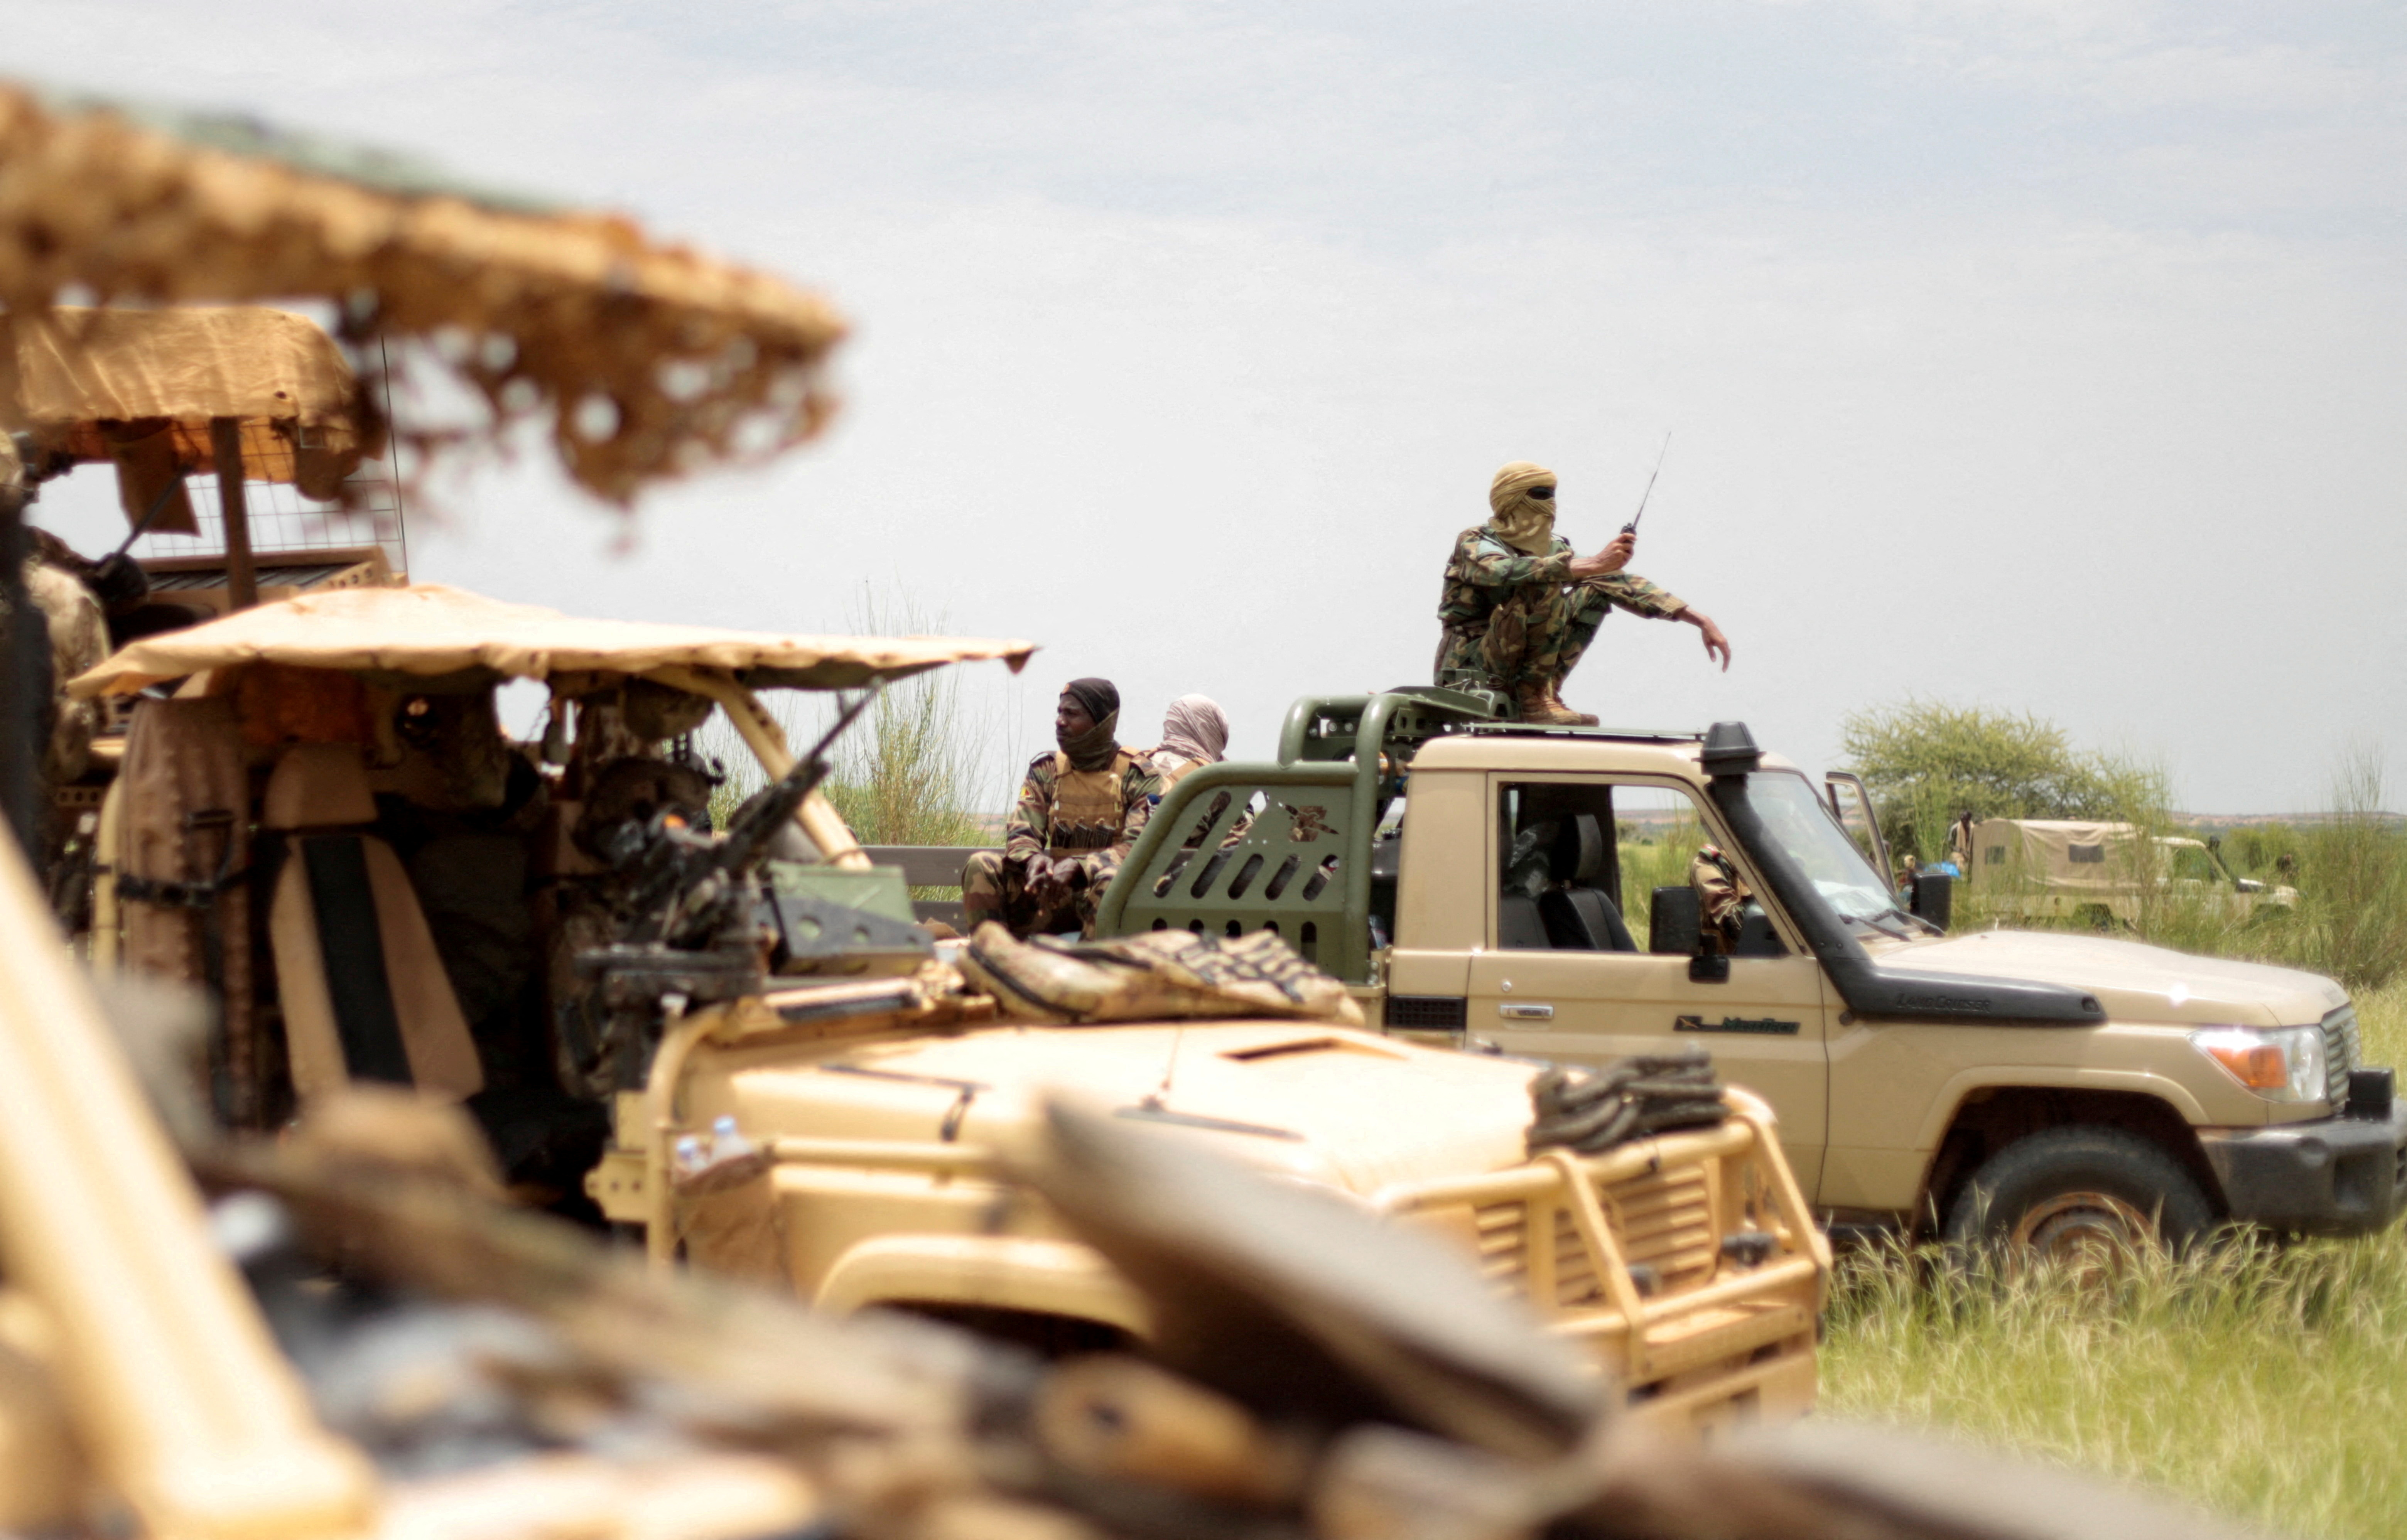 Malis größte dschihadistische Koalition gab bekannt, dass sie einen russischen Söldner aus der Wagner-Gruppe gefangen genommen hat